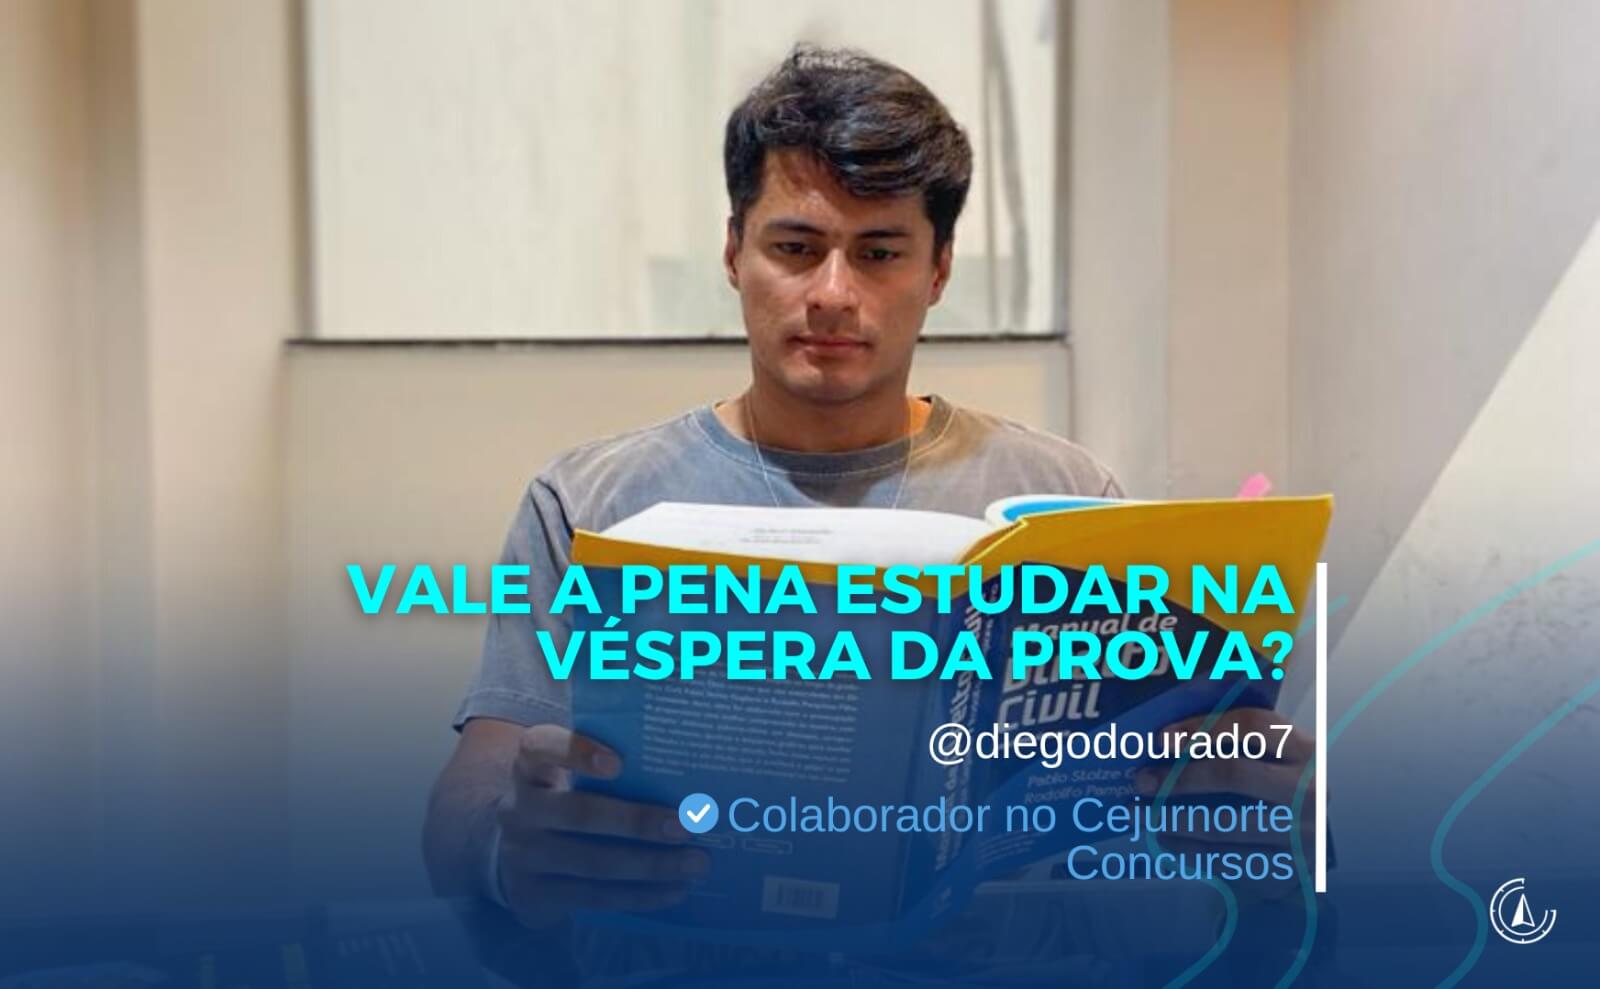 ''VALE A PENA ESPERAR NA VSPERA DA PROVA?'' - Por Diego Dourado